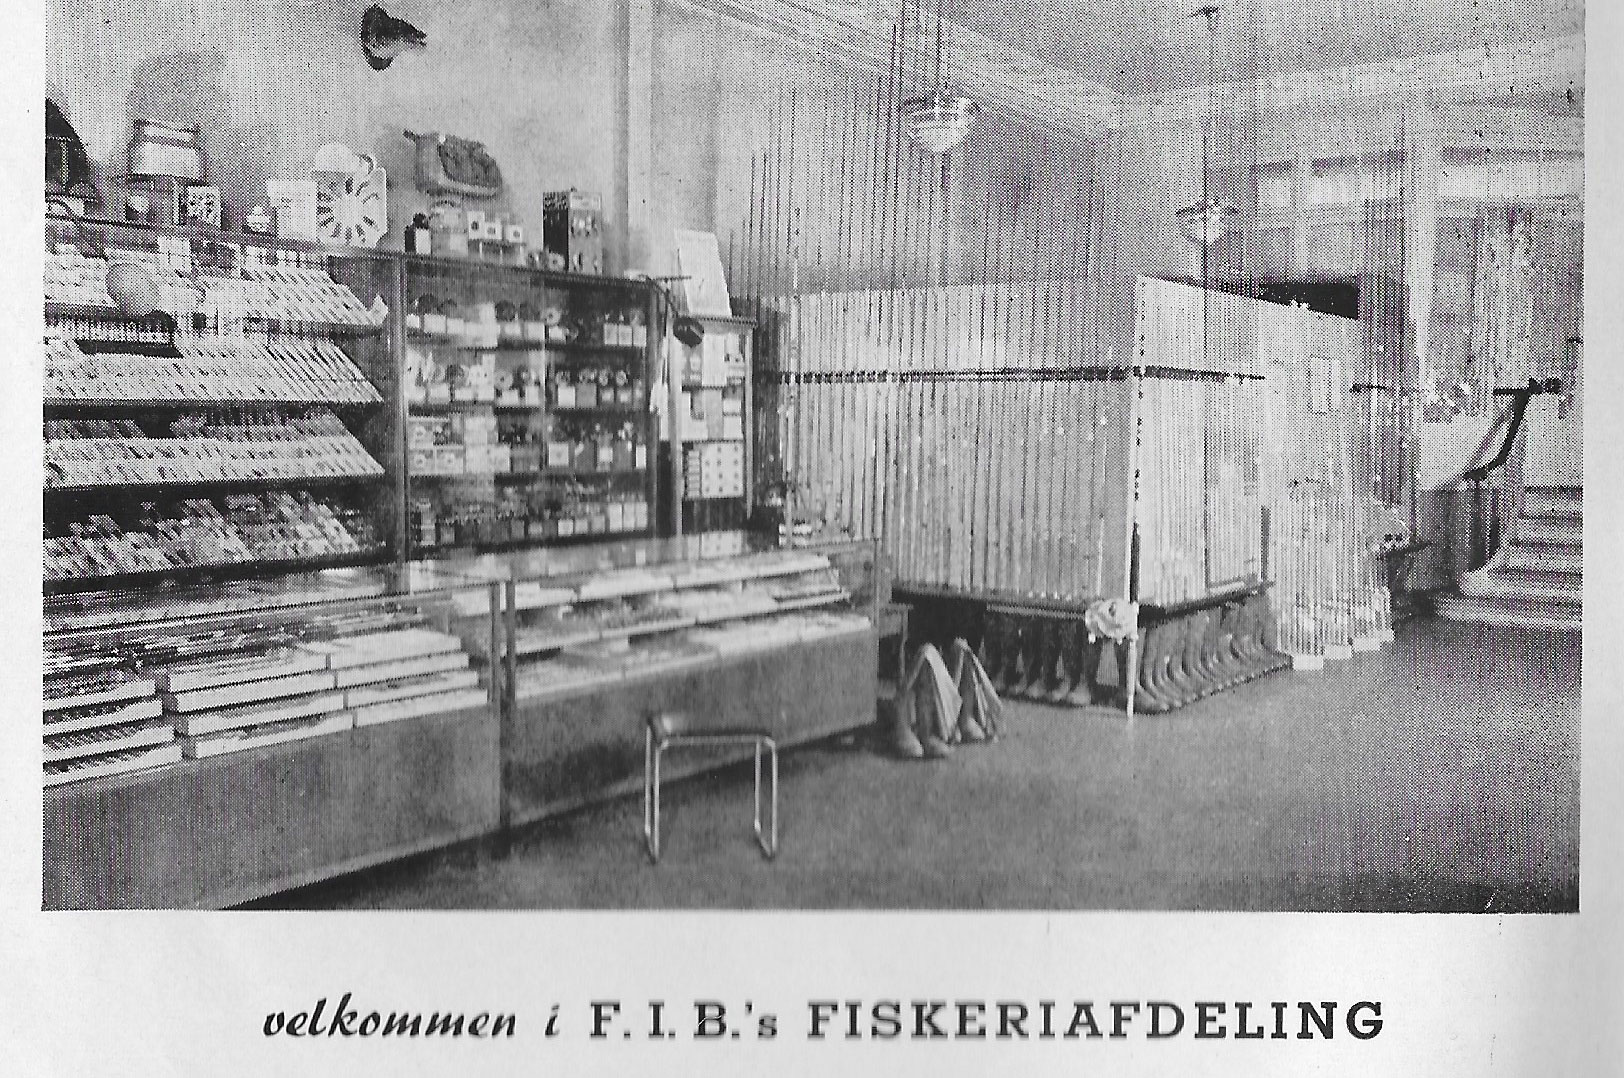 Indretningen af fiskeafdelingen i F.I.B. på Amagertorv i midten af 1950´erne. 